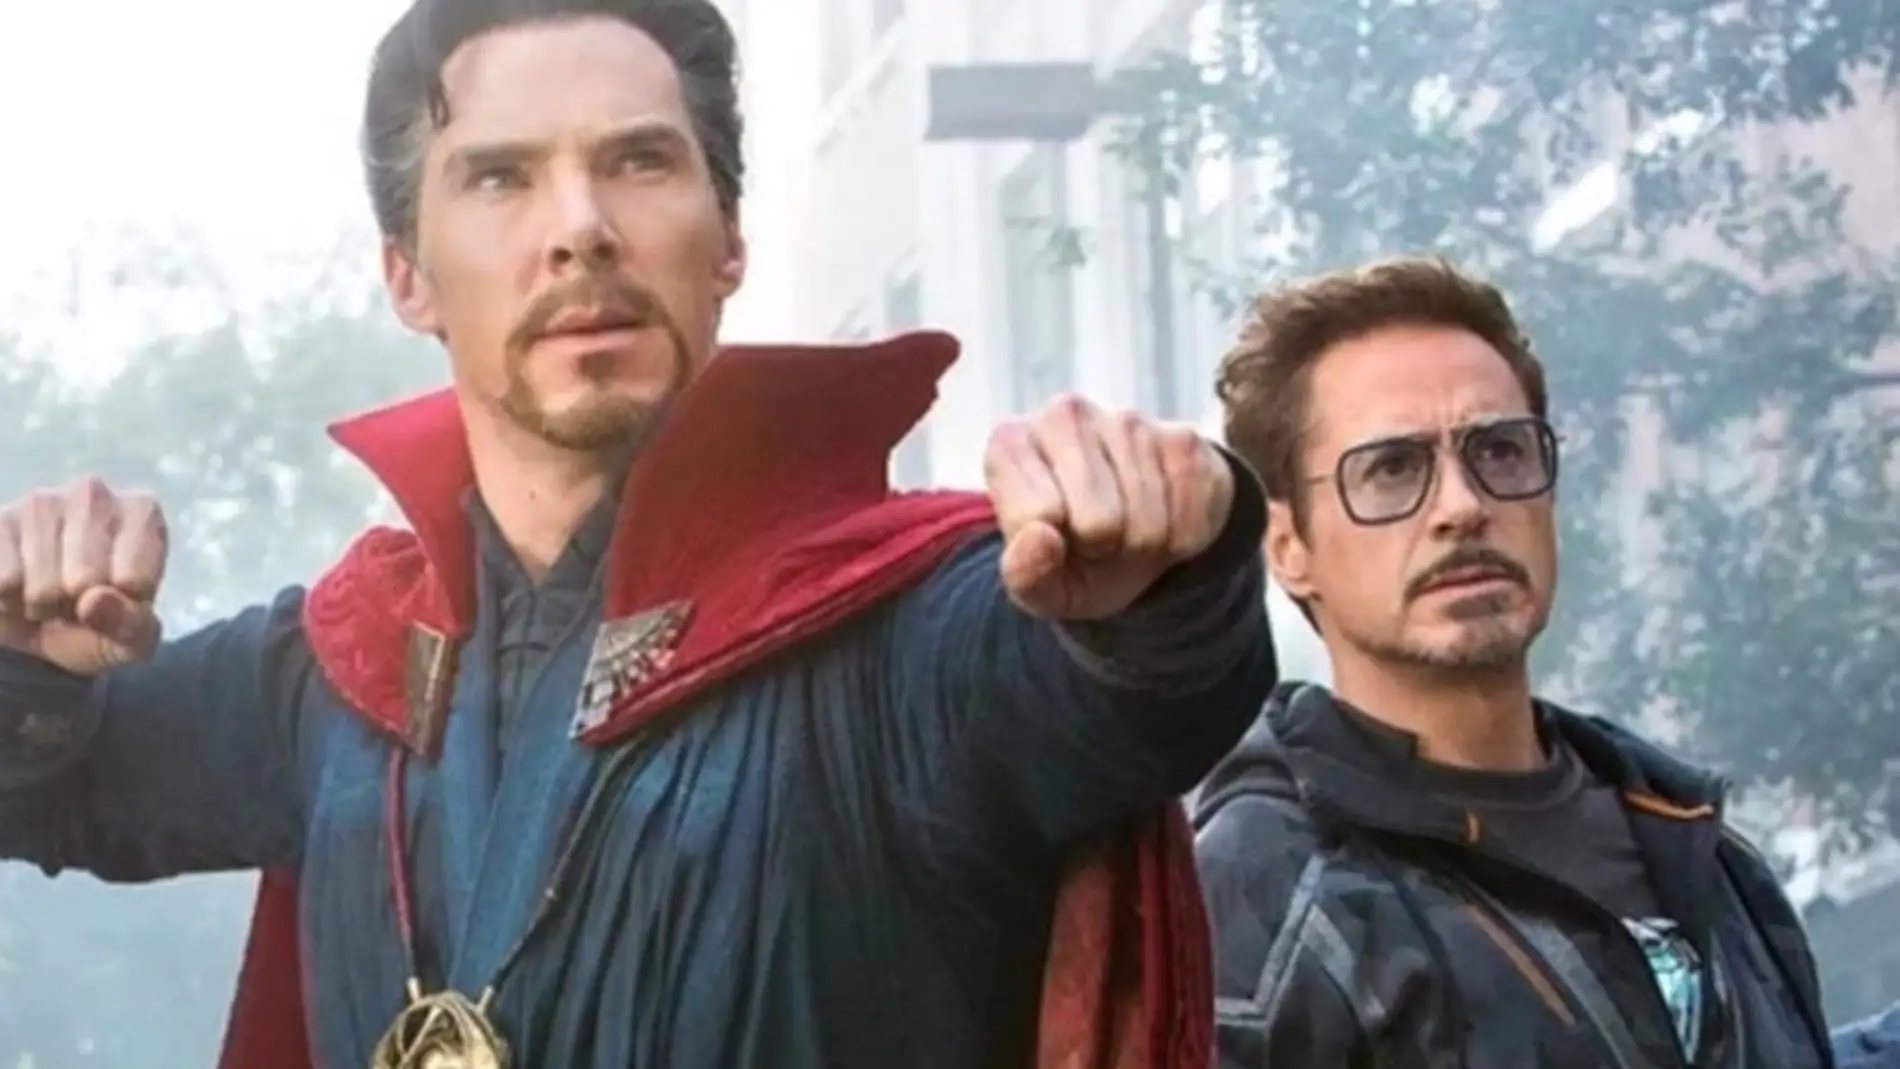 Doctor Extraño y Iron Man en 'Vengadores: Infinity War'